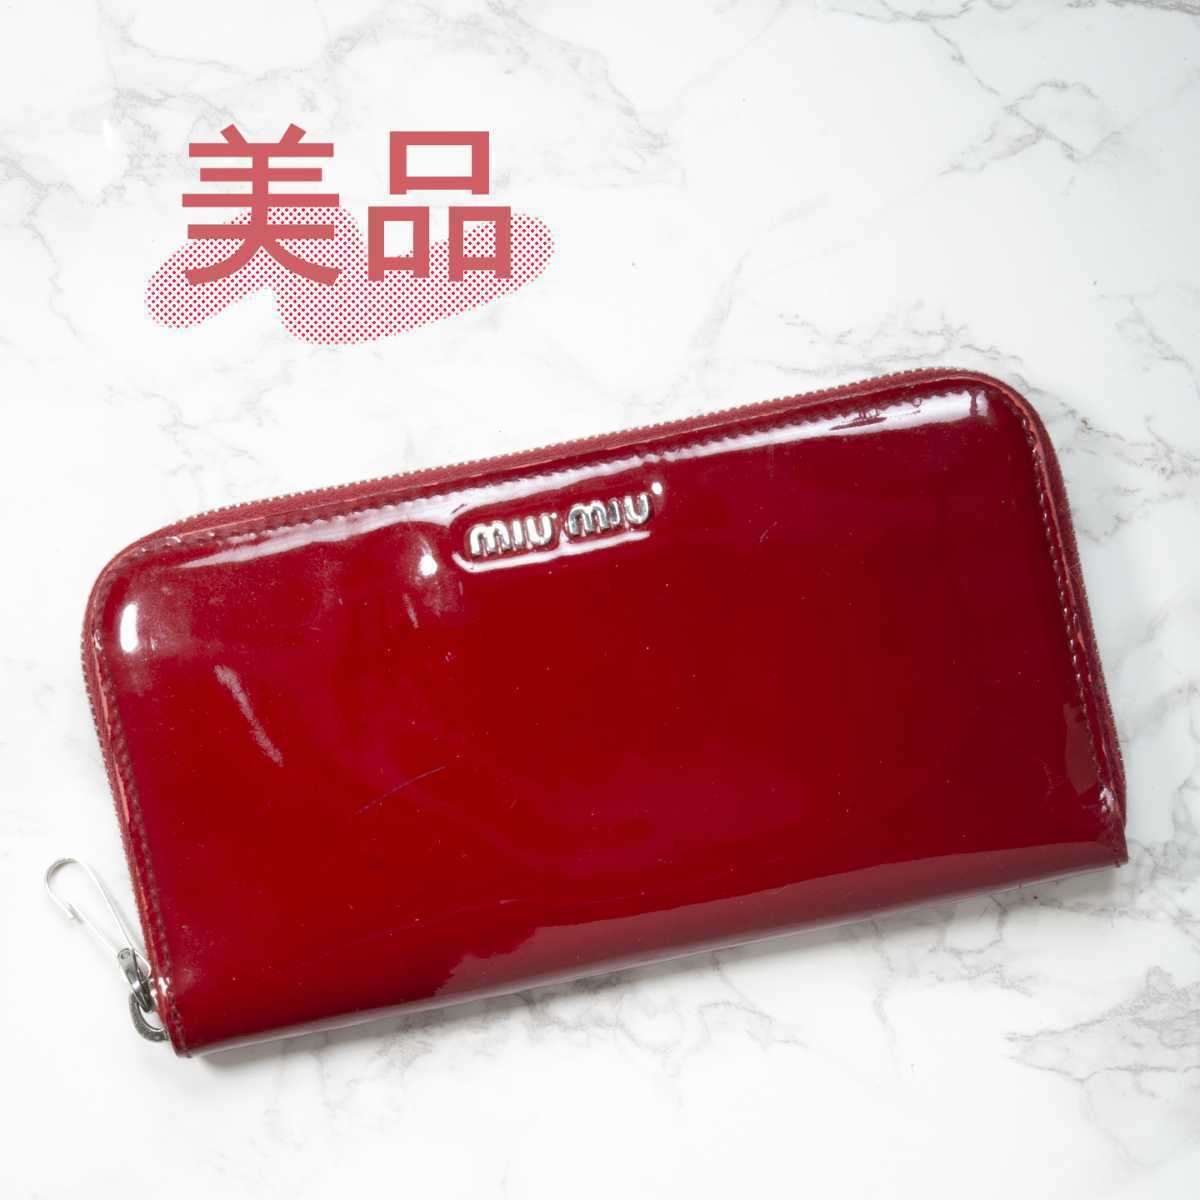 【美品】MIUMIU(ミュウミュウ)エナメル レザー ラウンドファスナー 長財布 レッド 赤 レディース 中古 used 5M0506 ラウンドジップ wallet